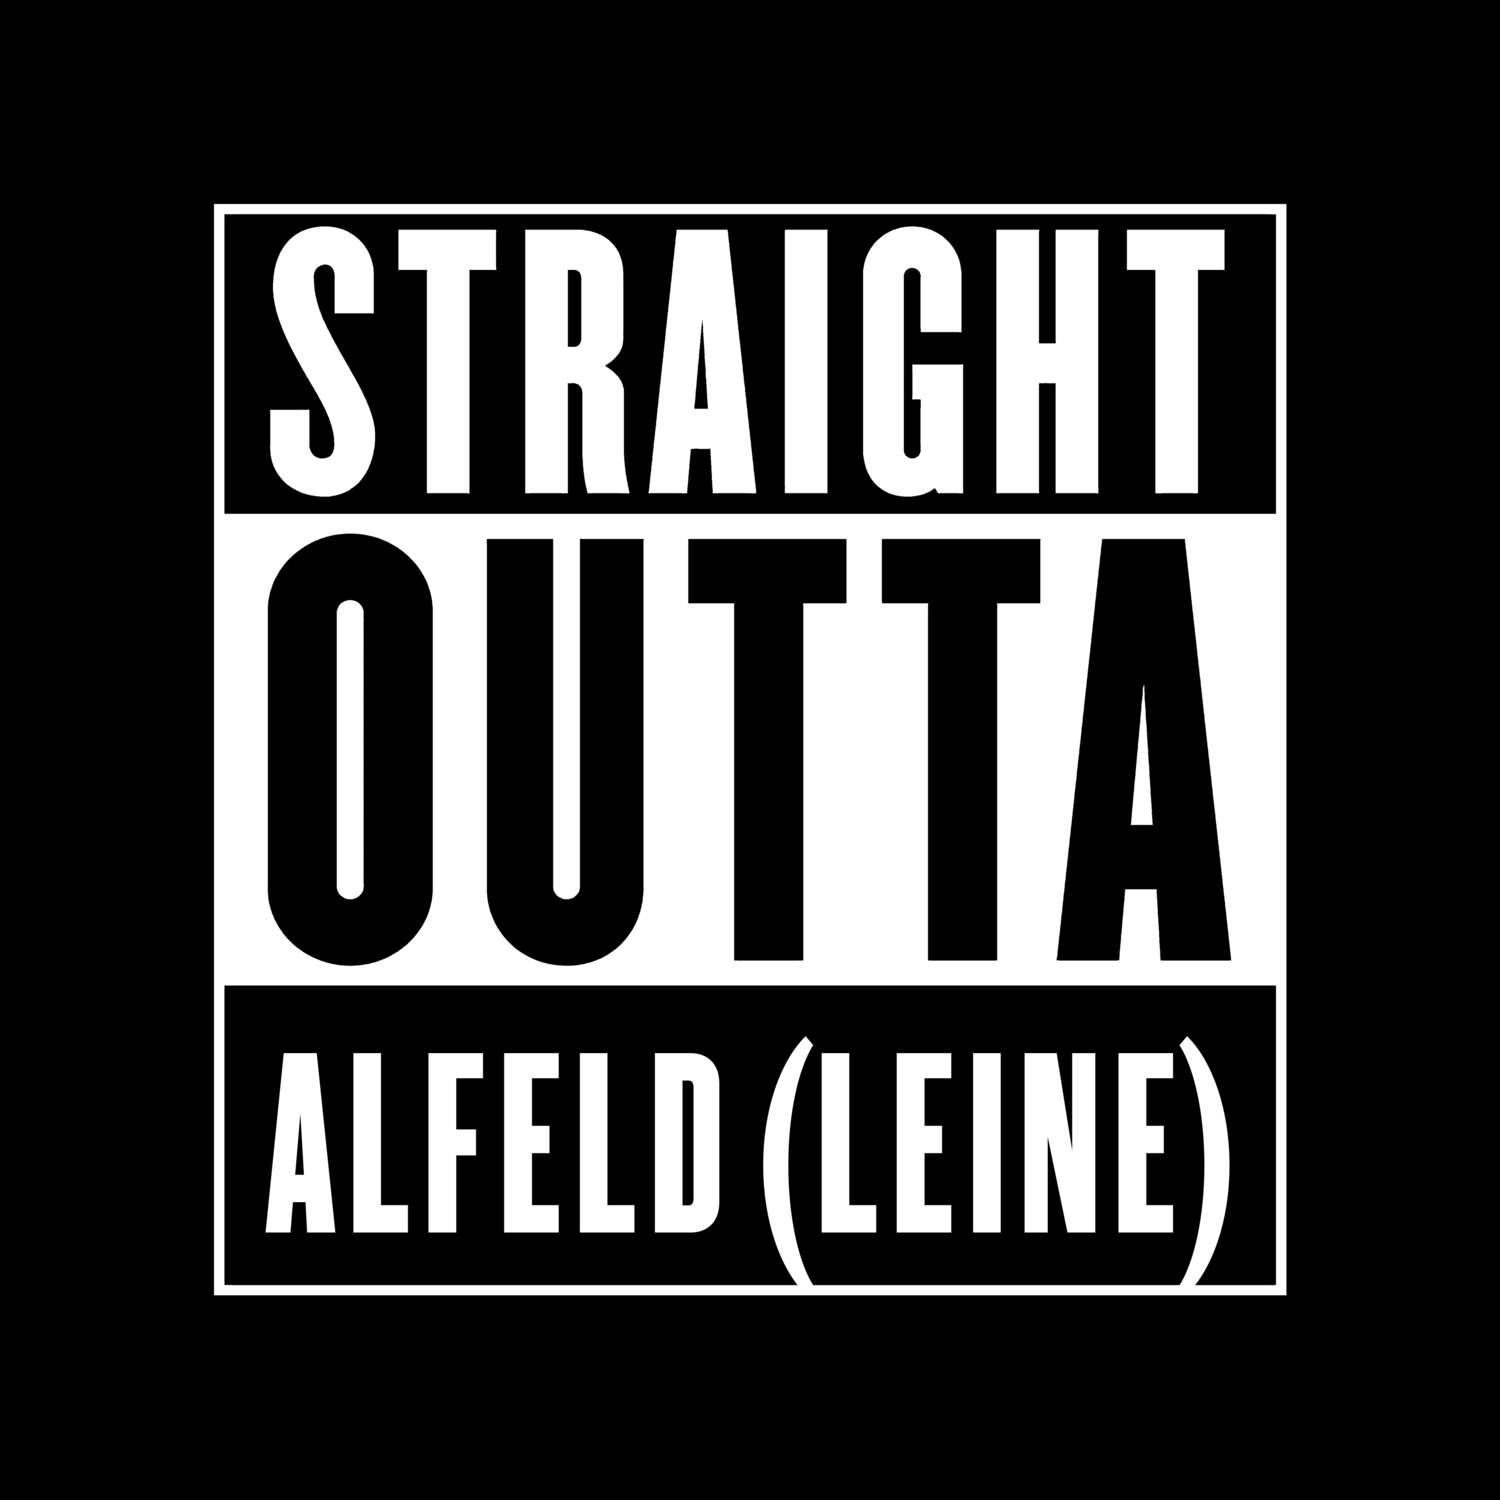 Alfeld (Leine) T-Shirt »Straight Outta«